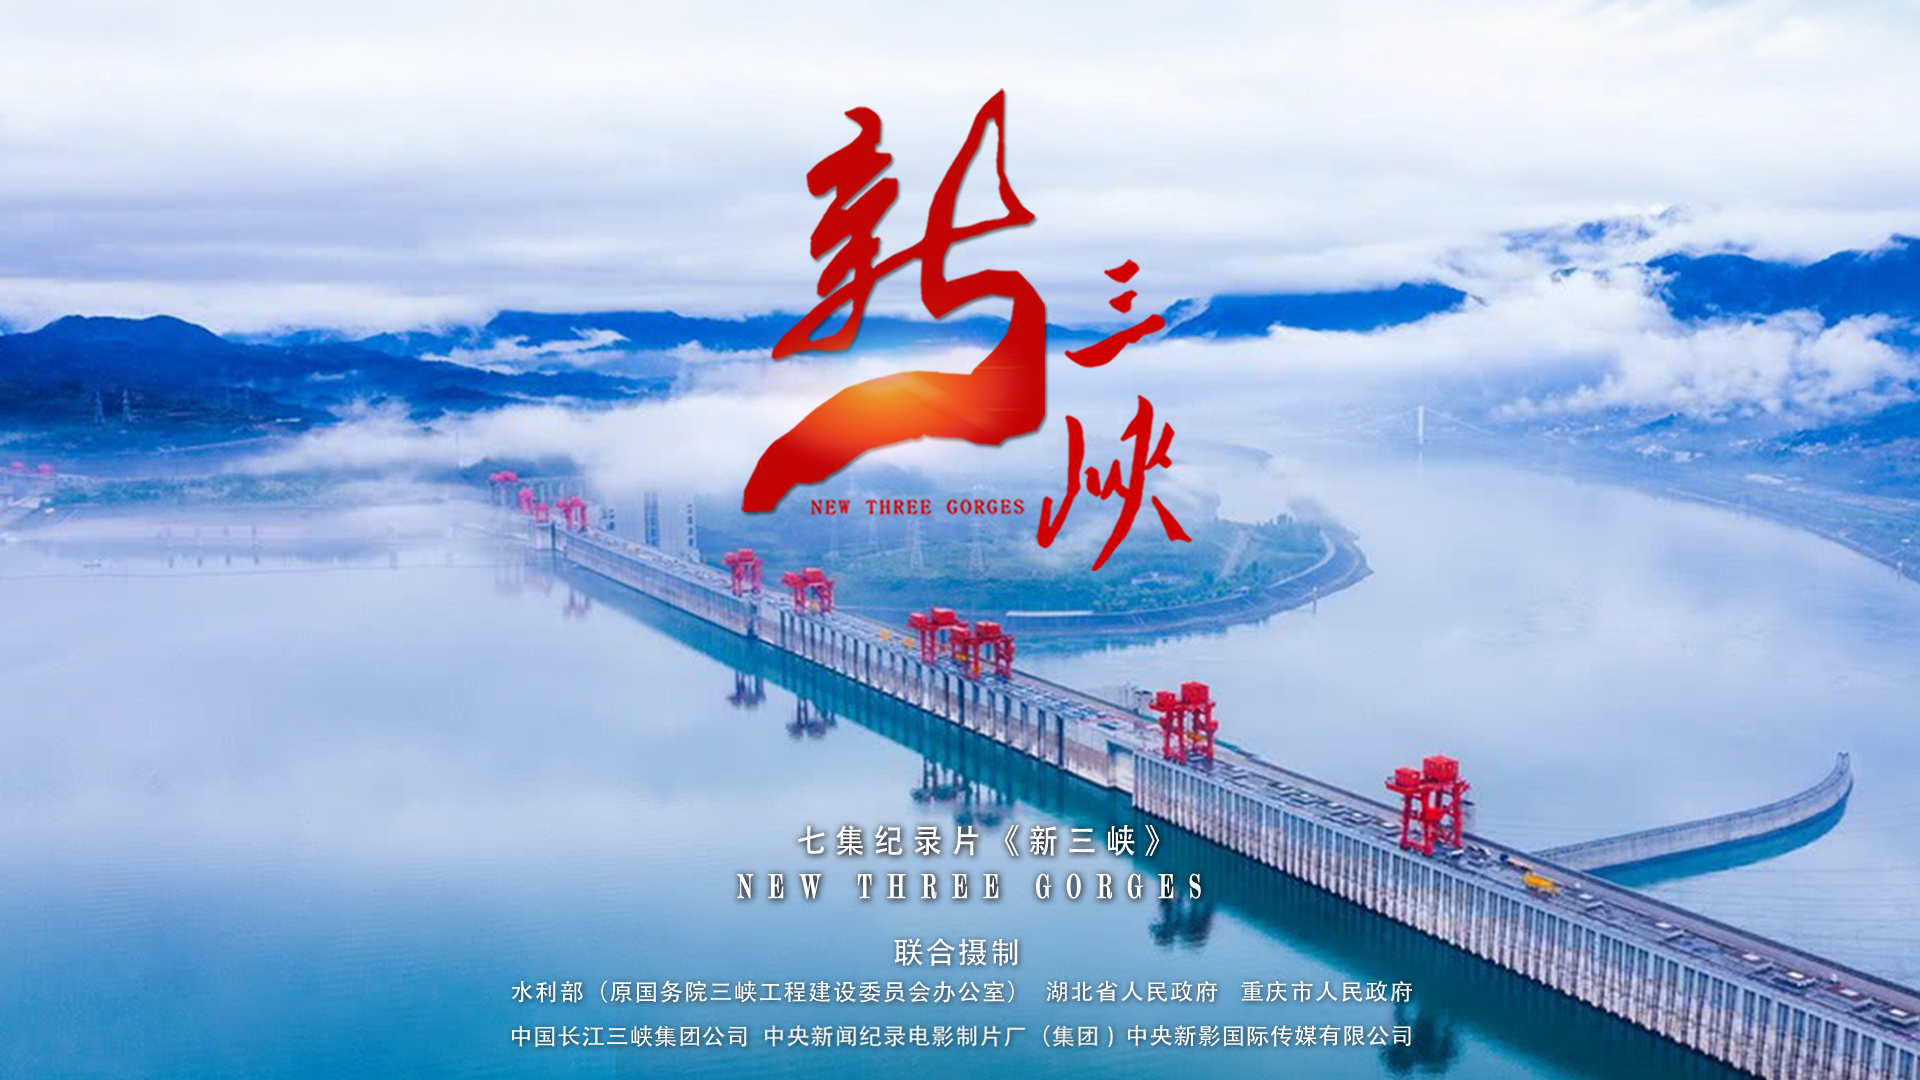 七集大型高清纪录片《新三峡》受全国观众追捧